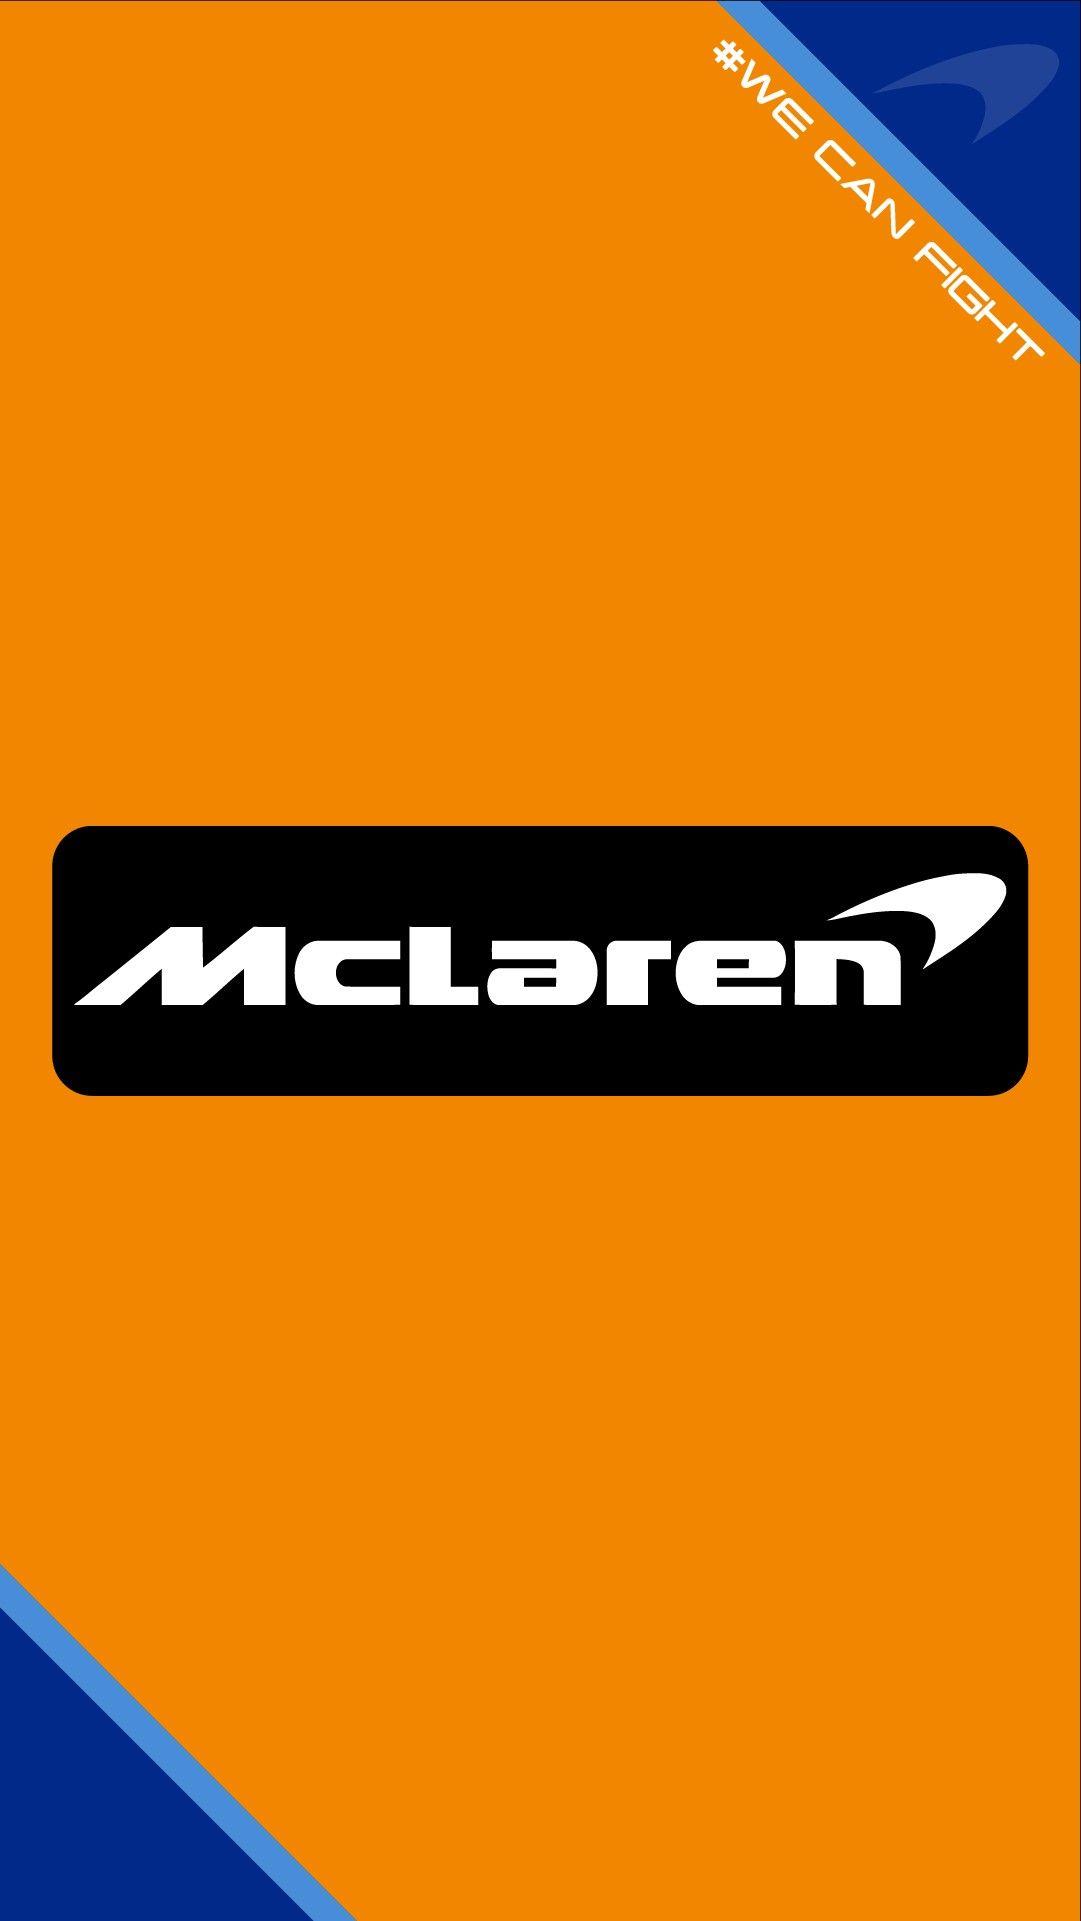 Mclaren f1 team wallpaper 2018 #mclaren #formula1 #f1 #renault #alonso #racing #sport #wallpaper. Team wallpaper, Mclaren f Mclaren